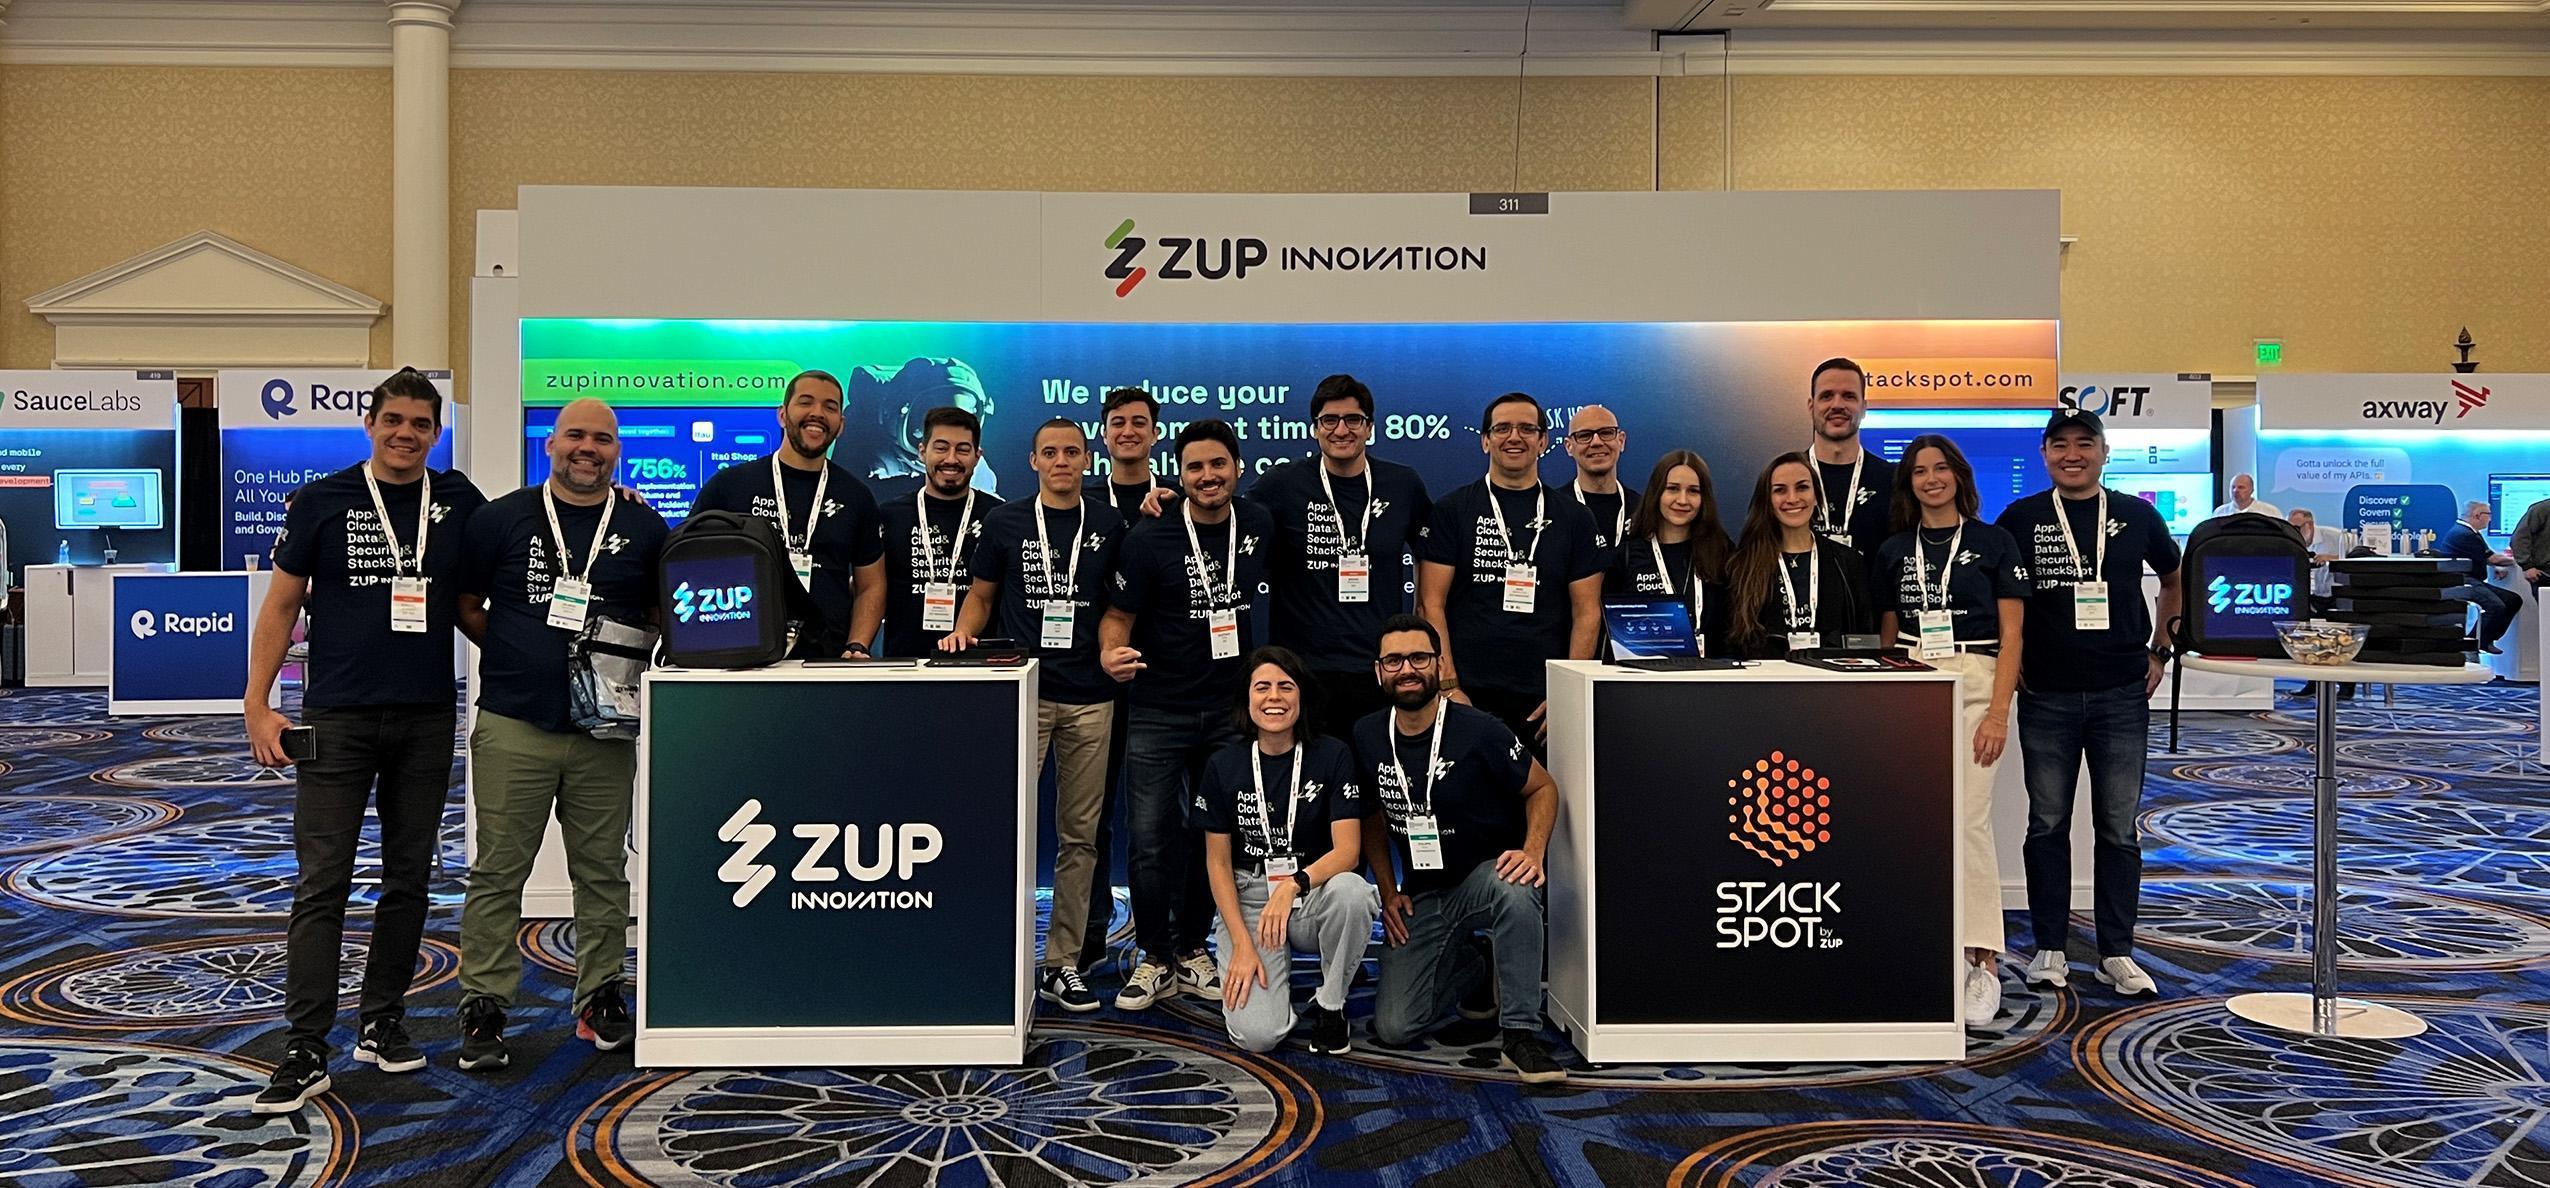 Foto de capa do conteúdo "Gartner Application Innovation 2023" com 17 pessoas de camiseta azul escura representando a Zup Innovation e StackSpot. Atrás está o estande da empresa com um painel e a frente dois tótens.